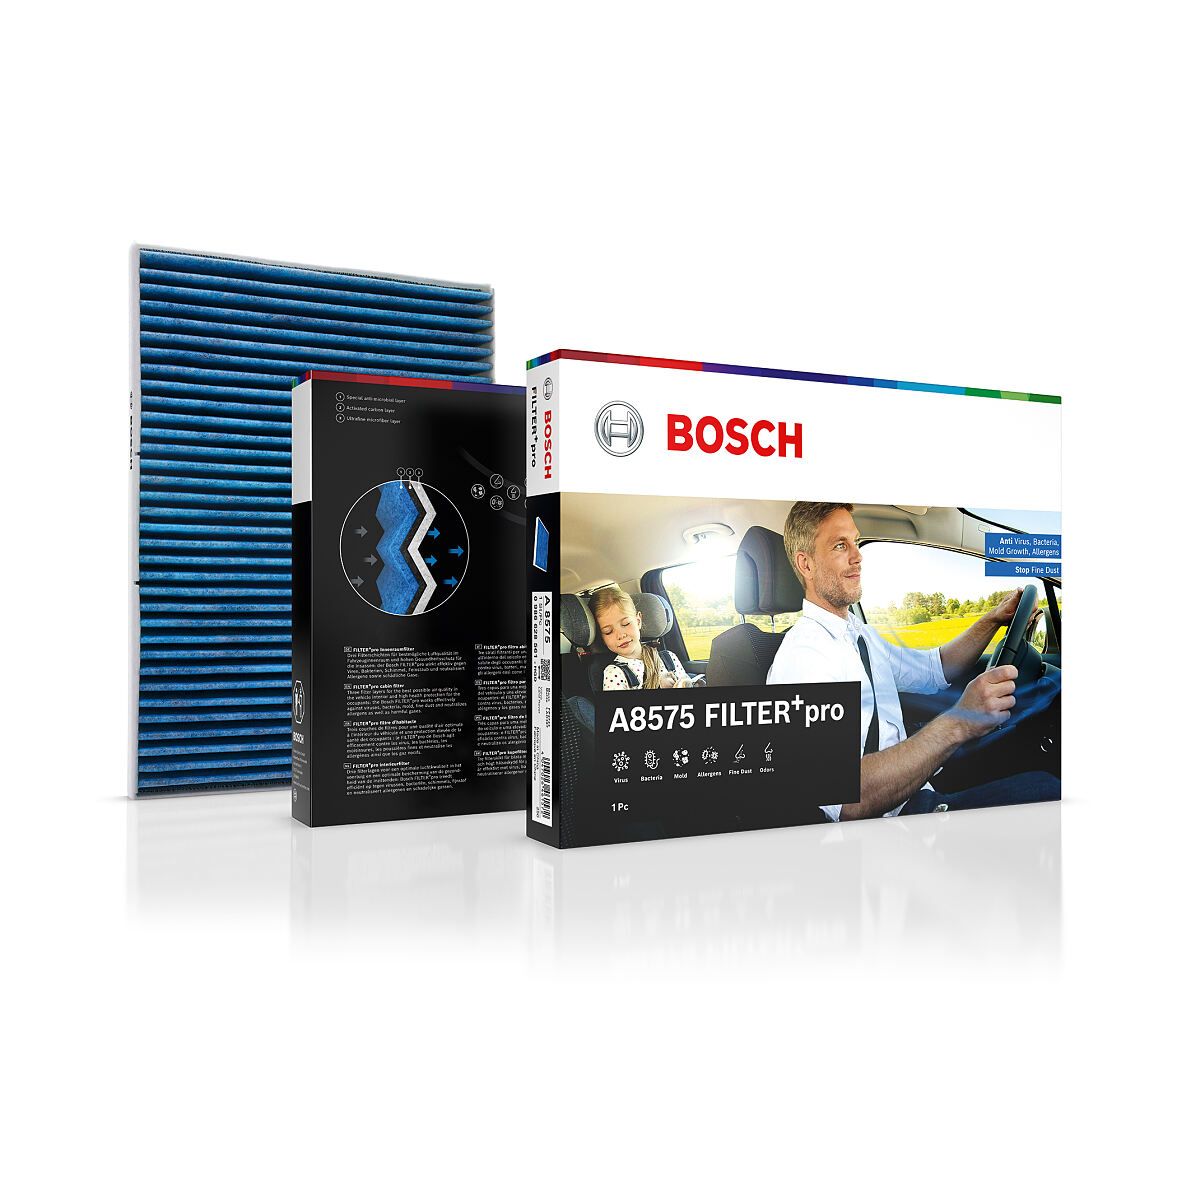 FILTER+pro von Bosch